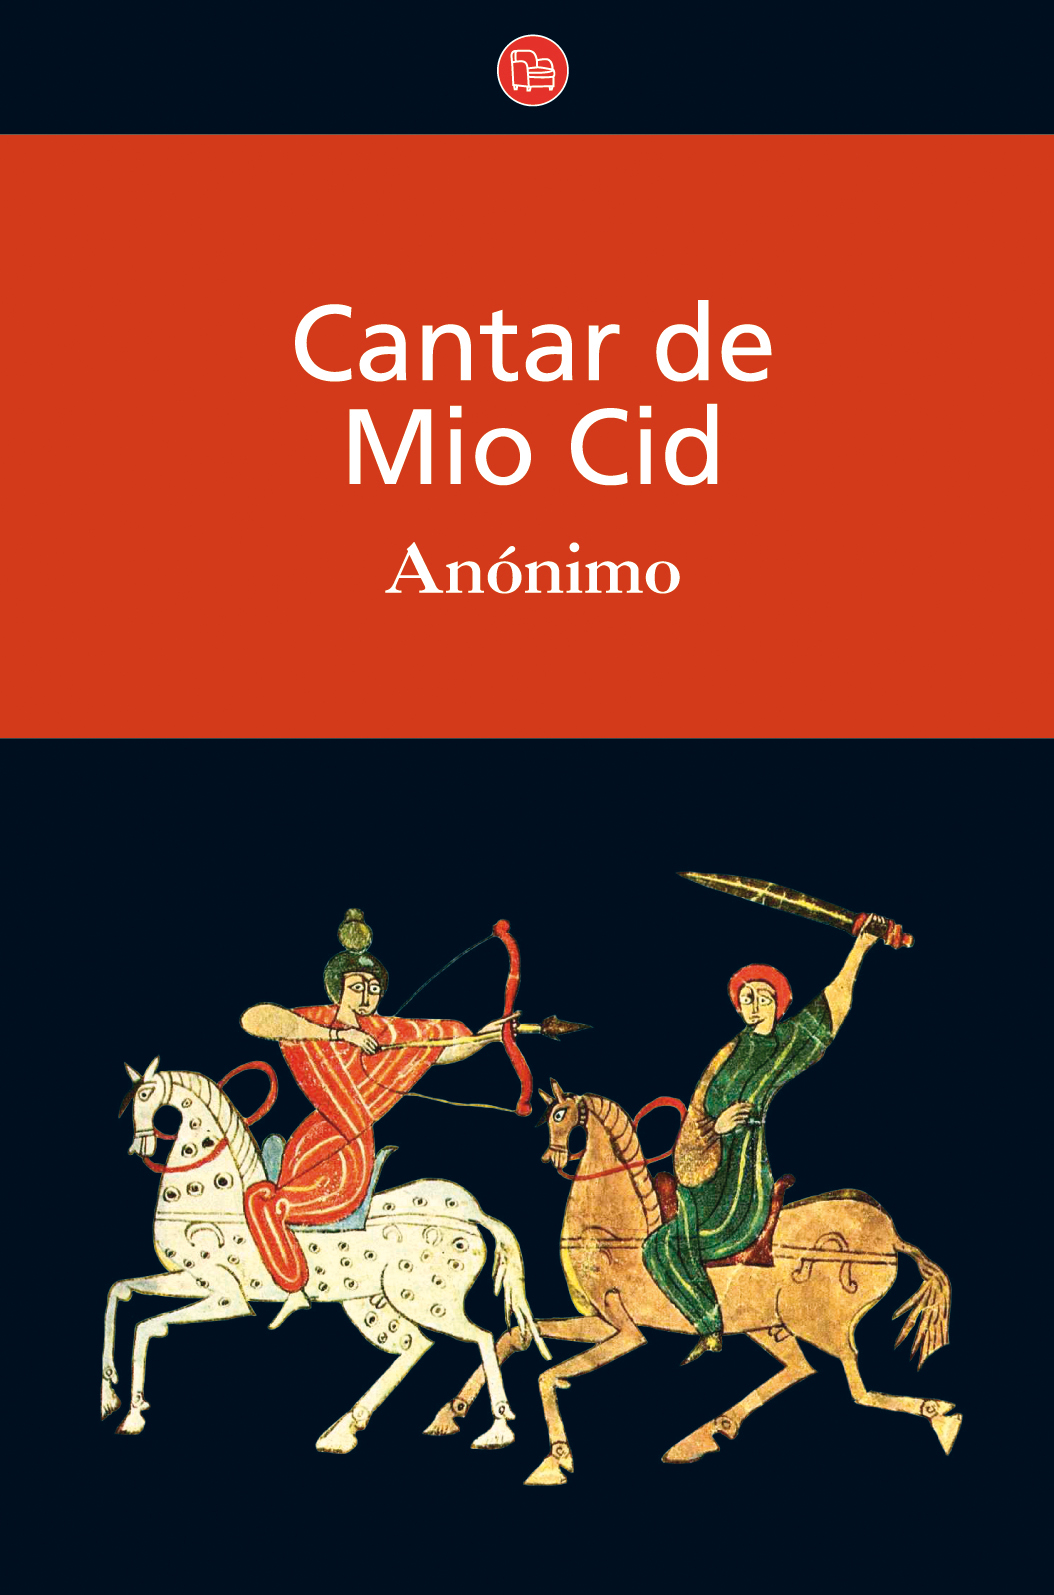 Audiolibro Cantar de Mio Cid – Anónimo